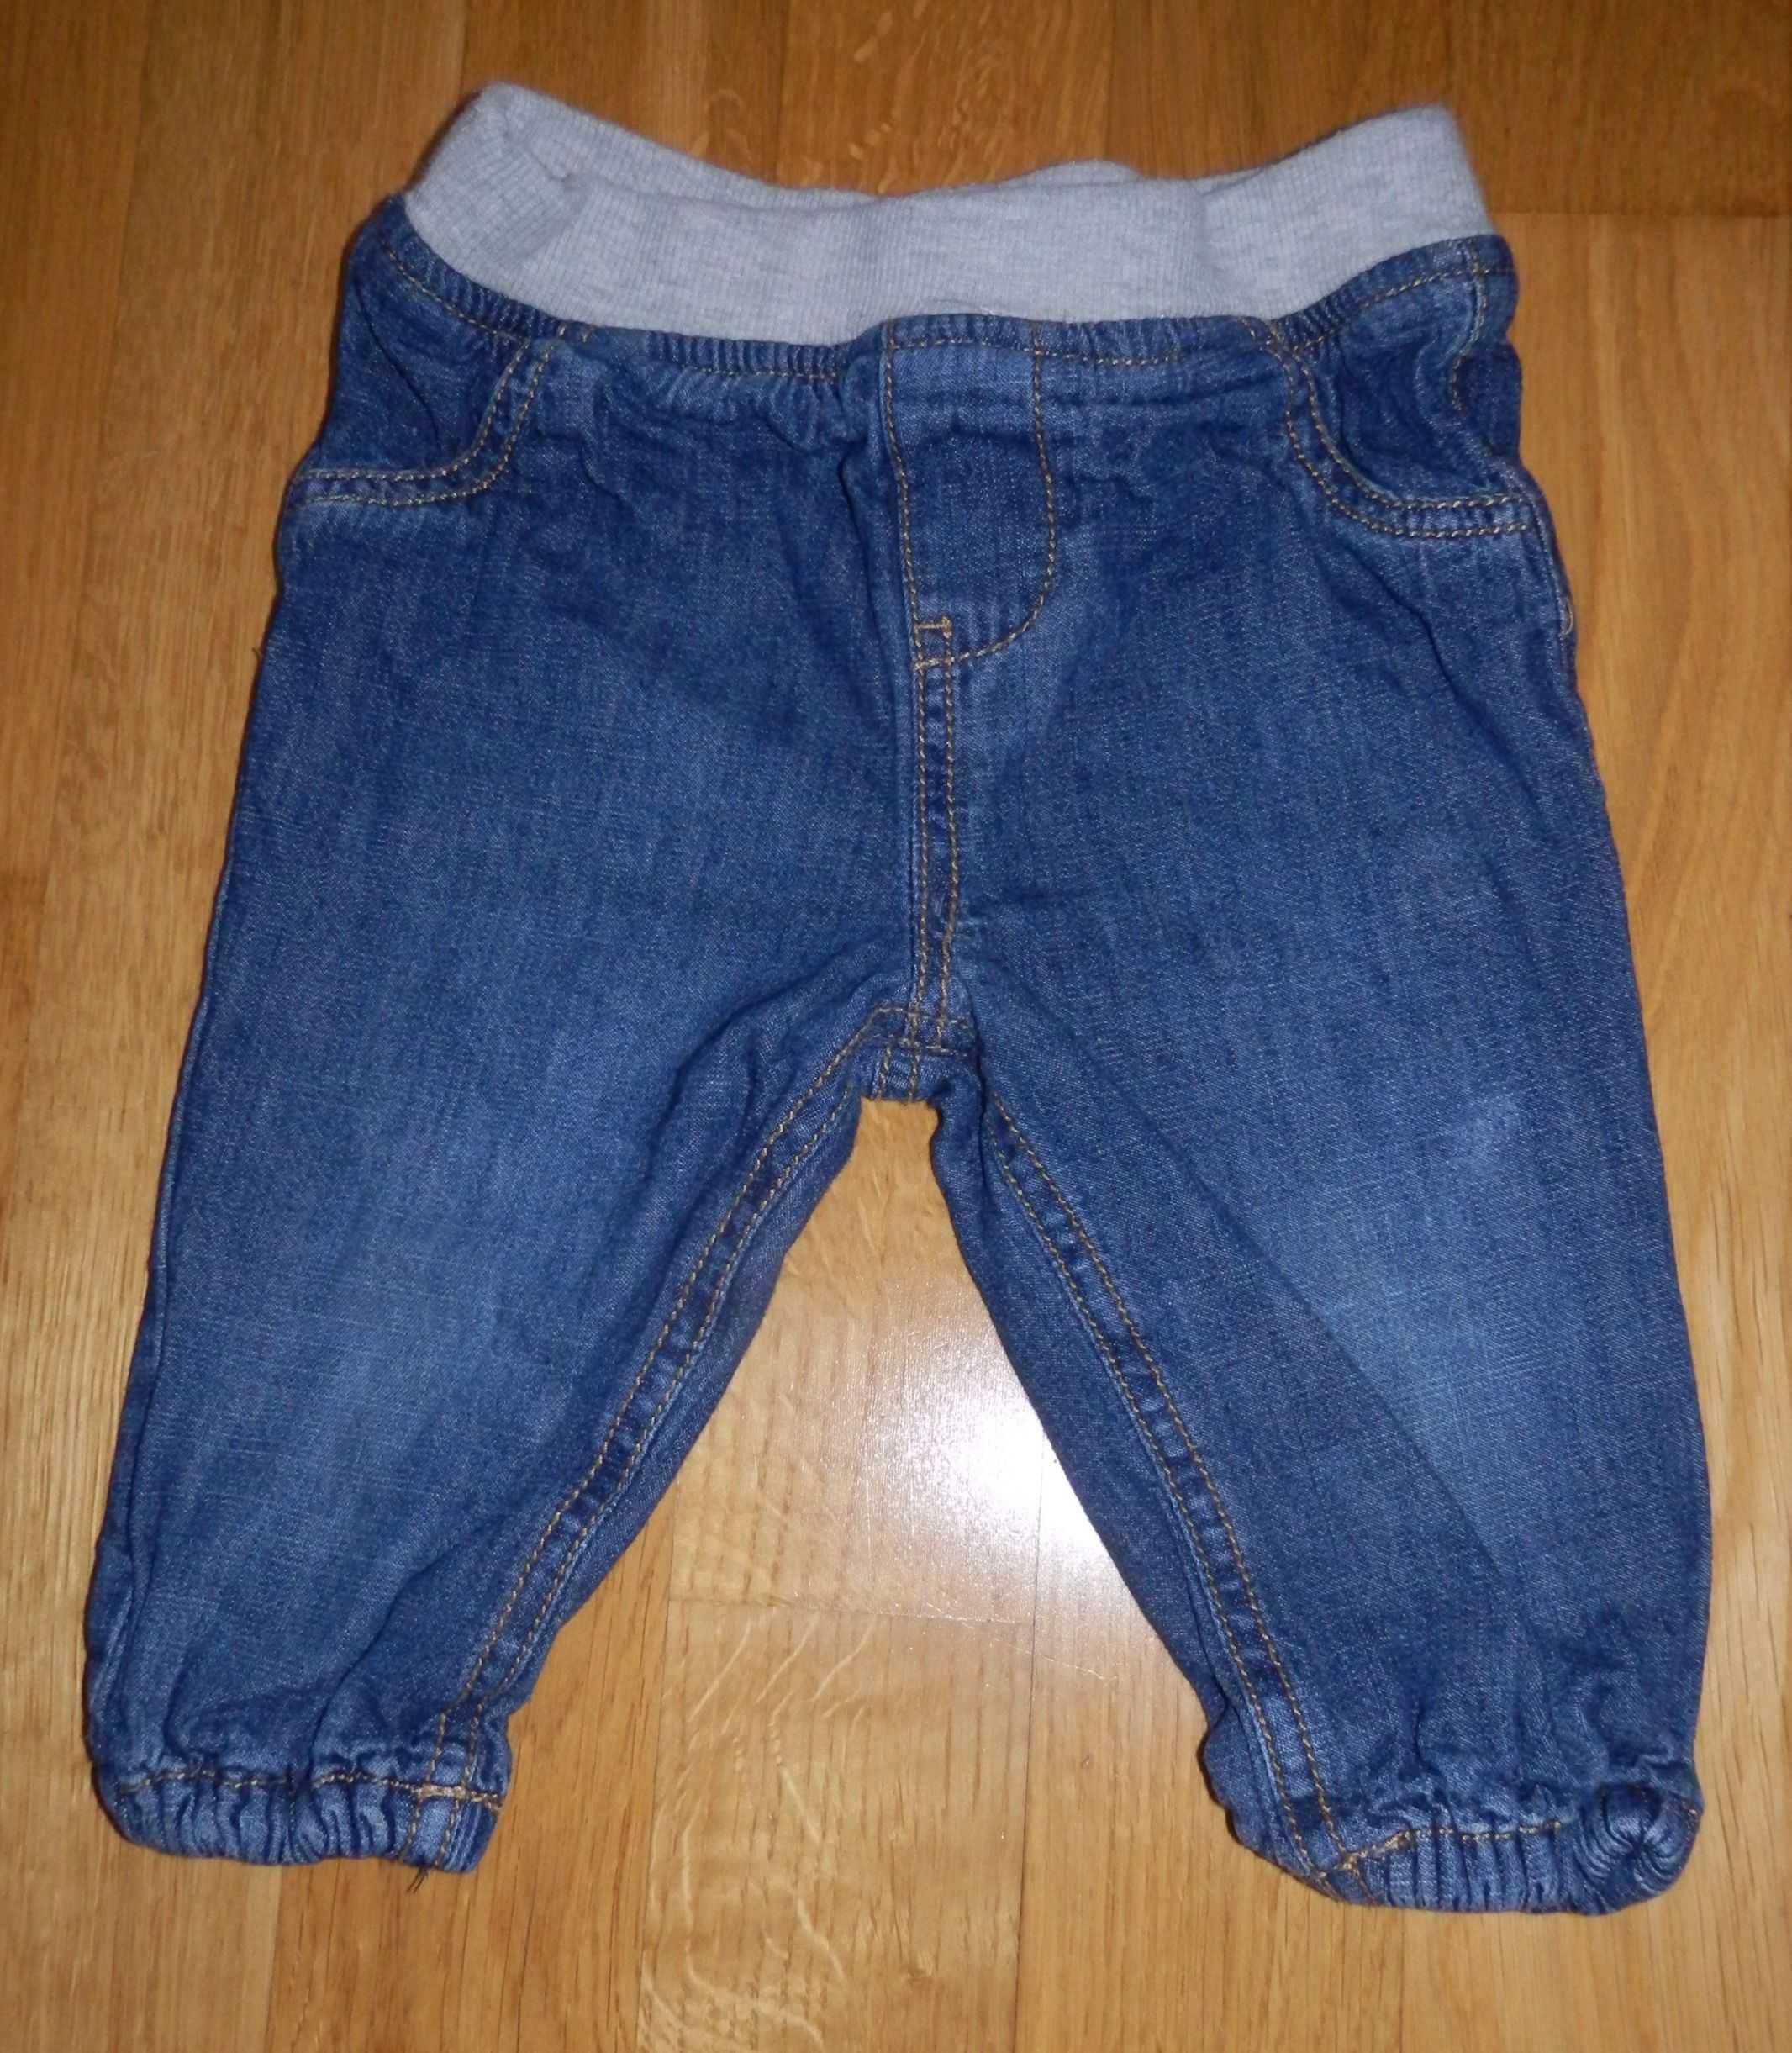 spodnie dla chłopca jeans jeansowe długie r.74cm 6-9m-cy F&F Tesco